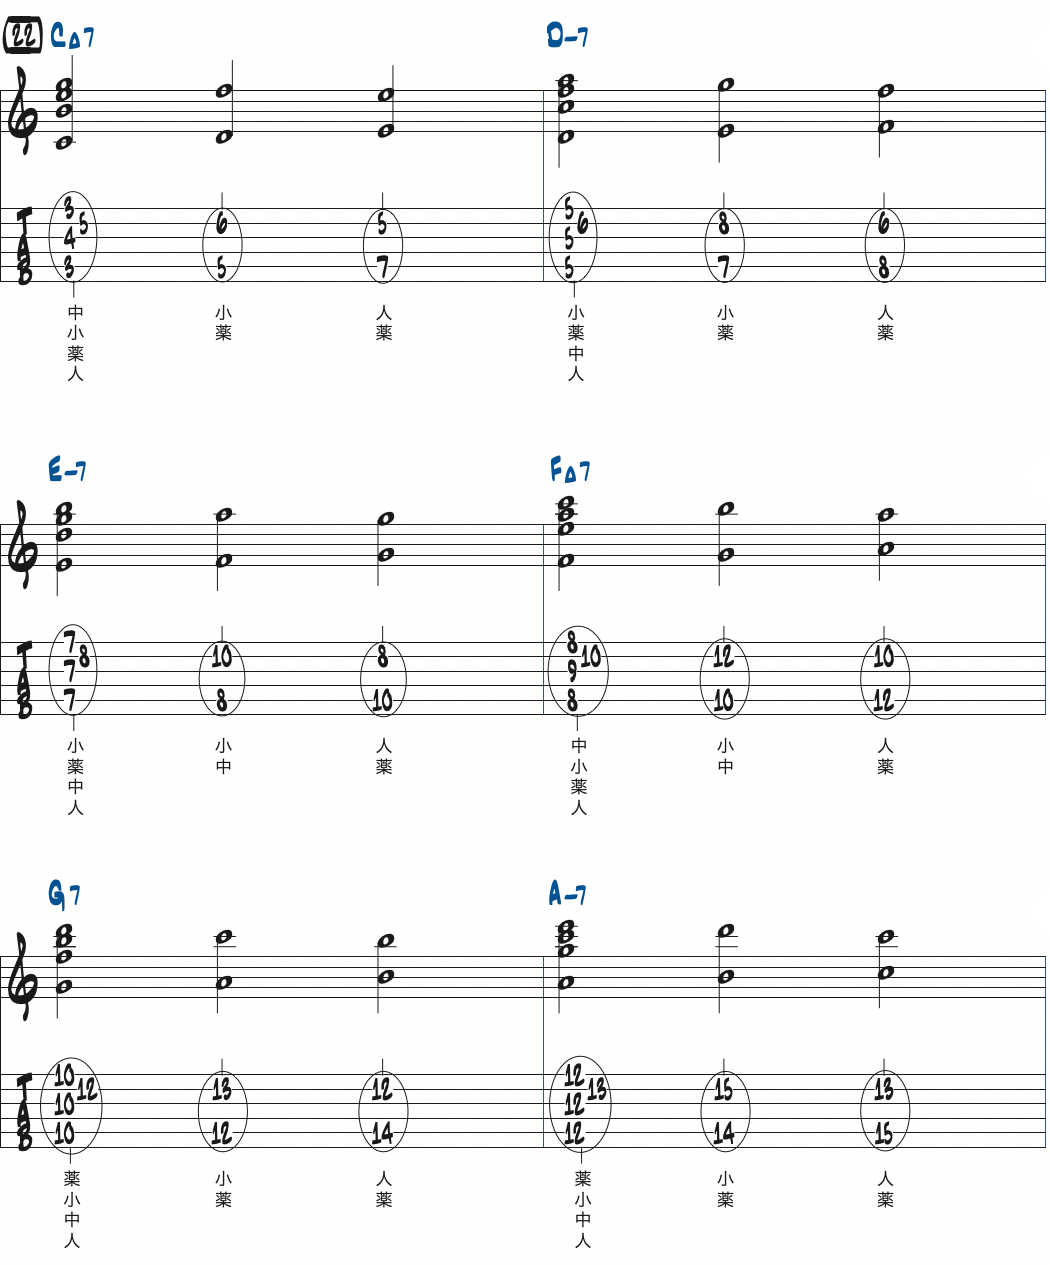 対位法の練習フレーズ22楽譜